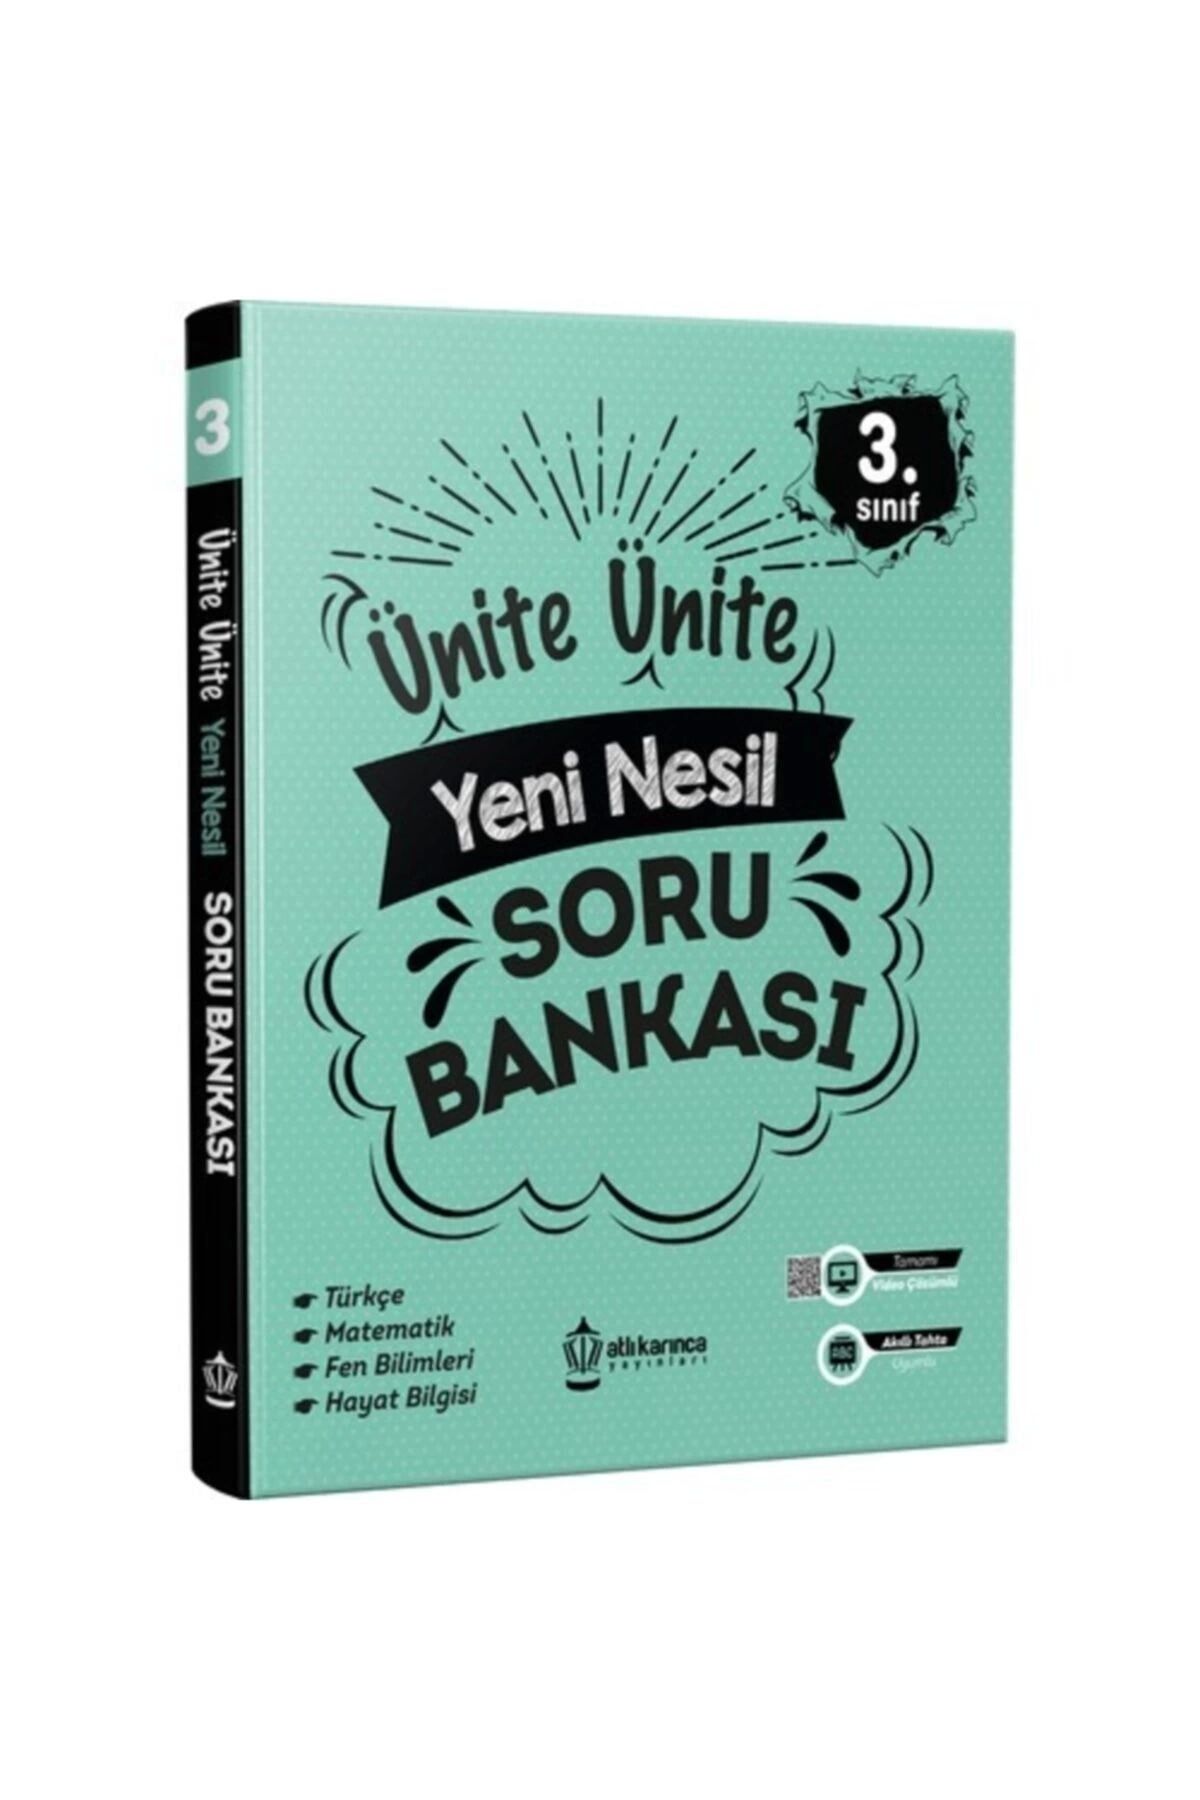 Artıbir Yayınları Atlıkarınca 3. Sınıf Tüm Dersler Ünite Ünite Yeni Nesil Soru Bankası